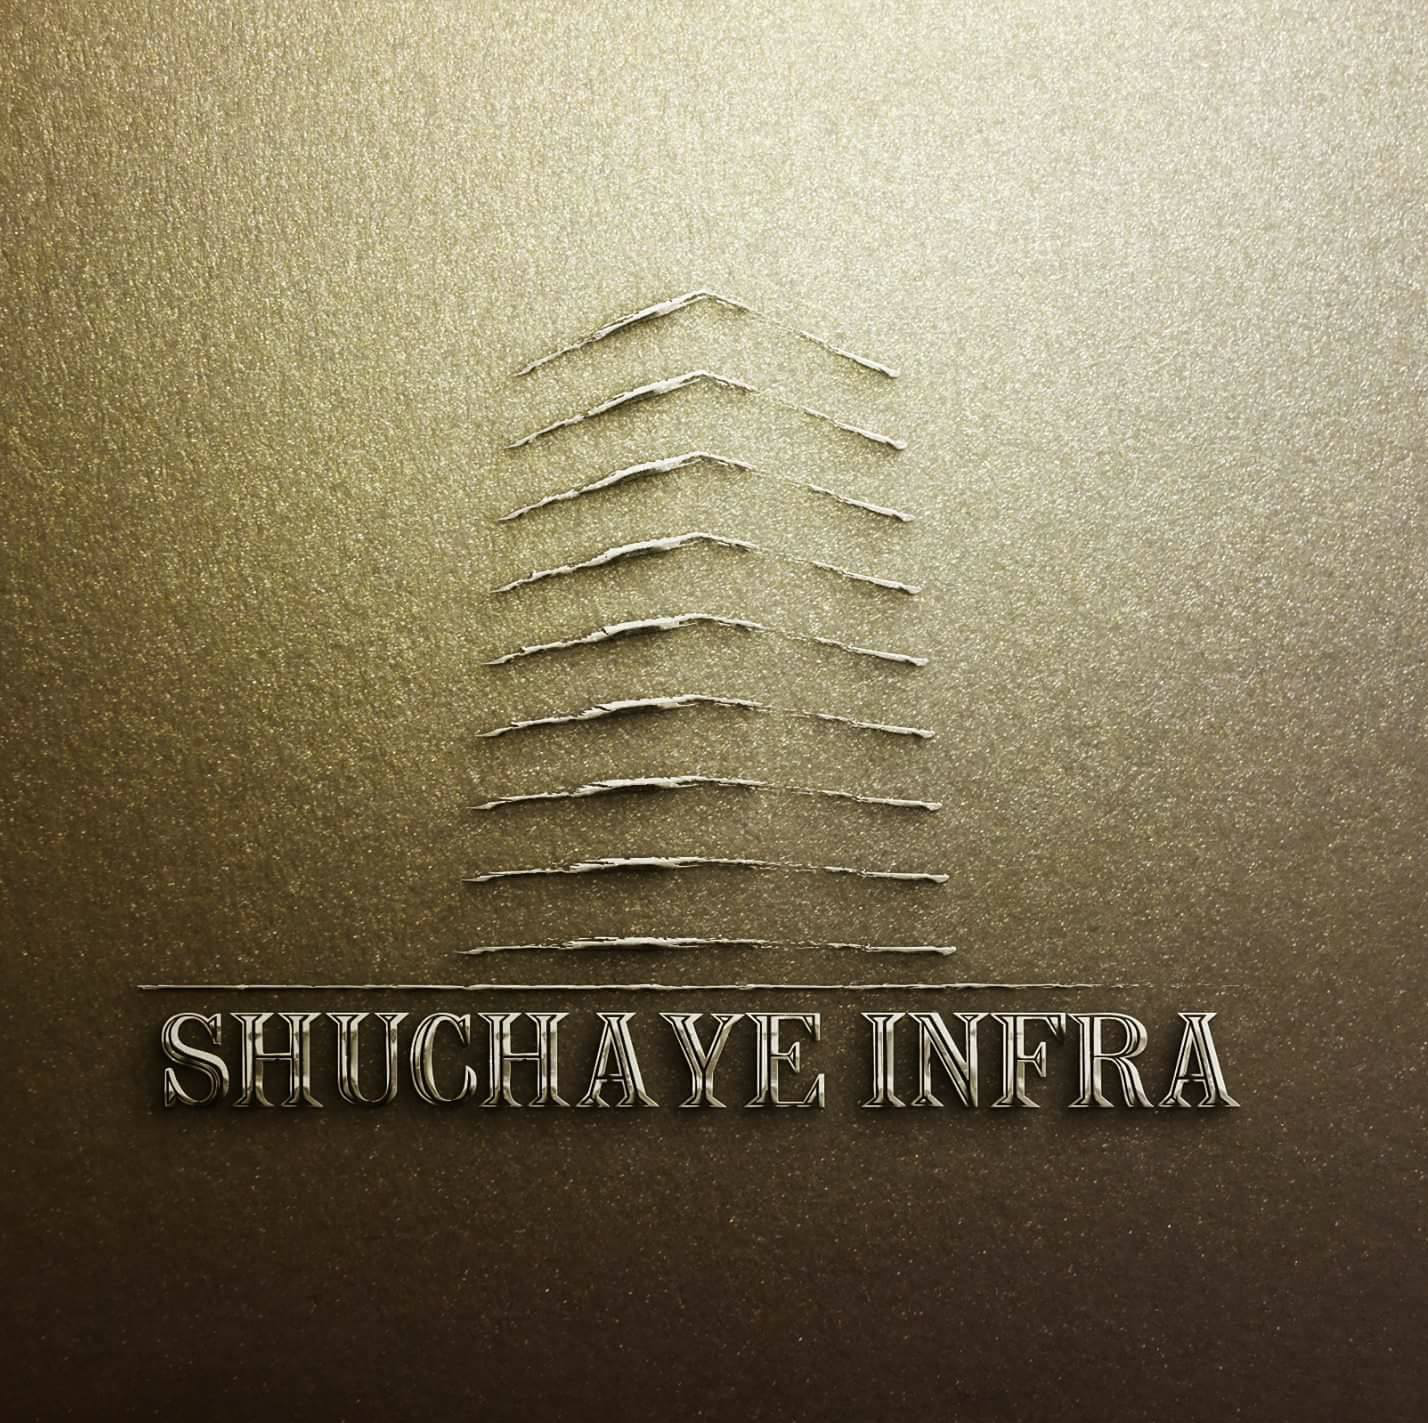  Shuchaye Infra 